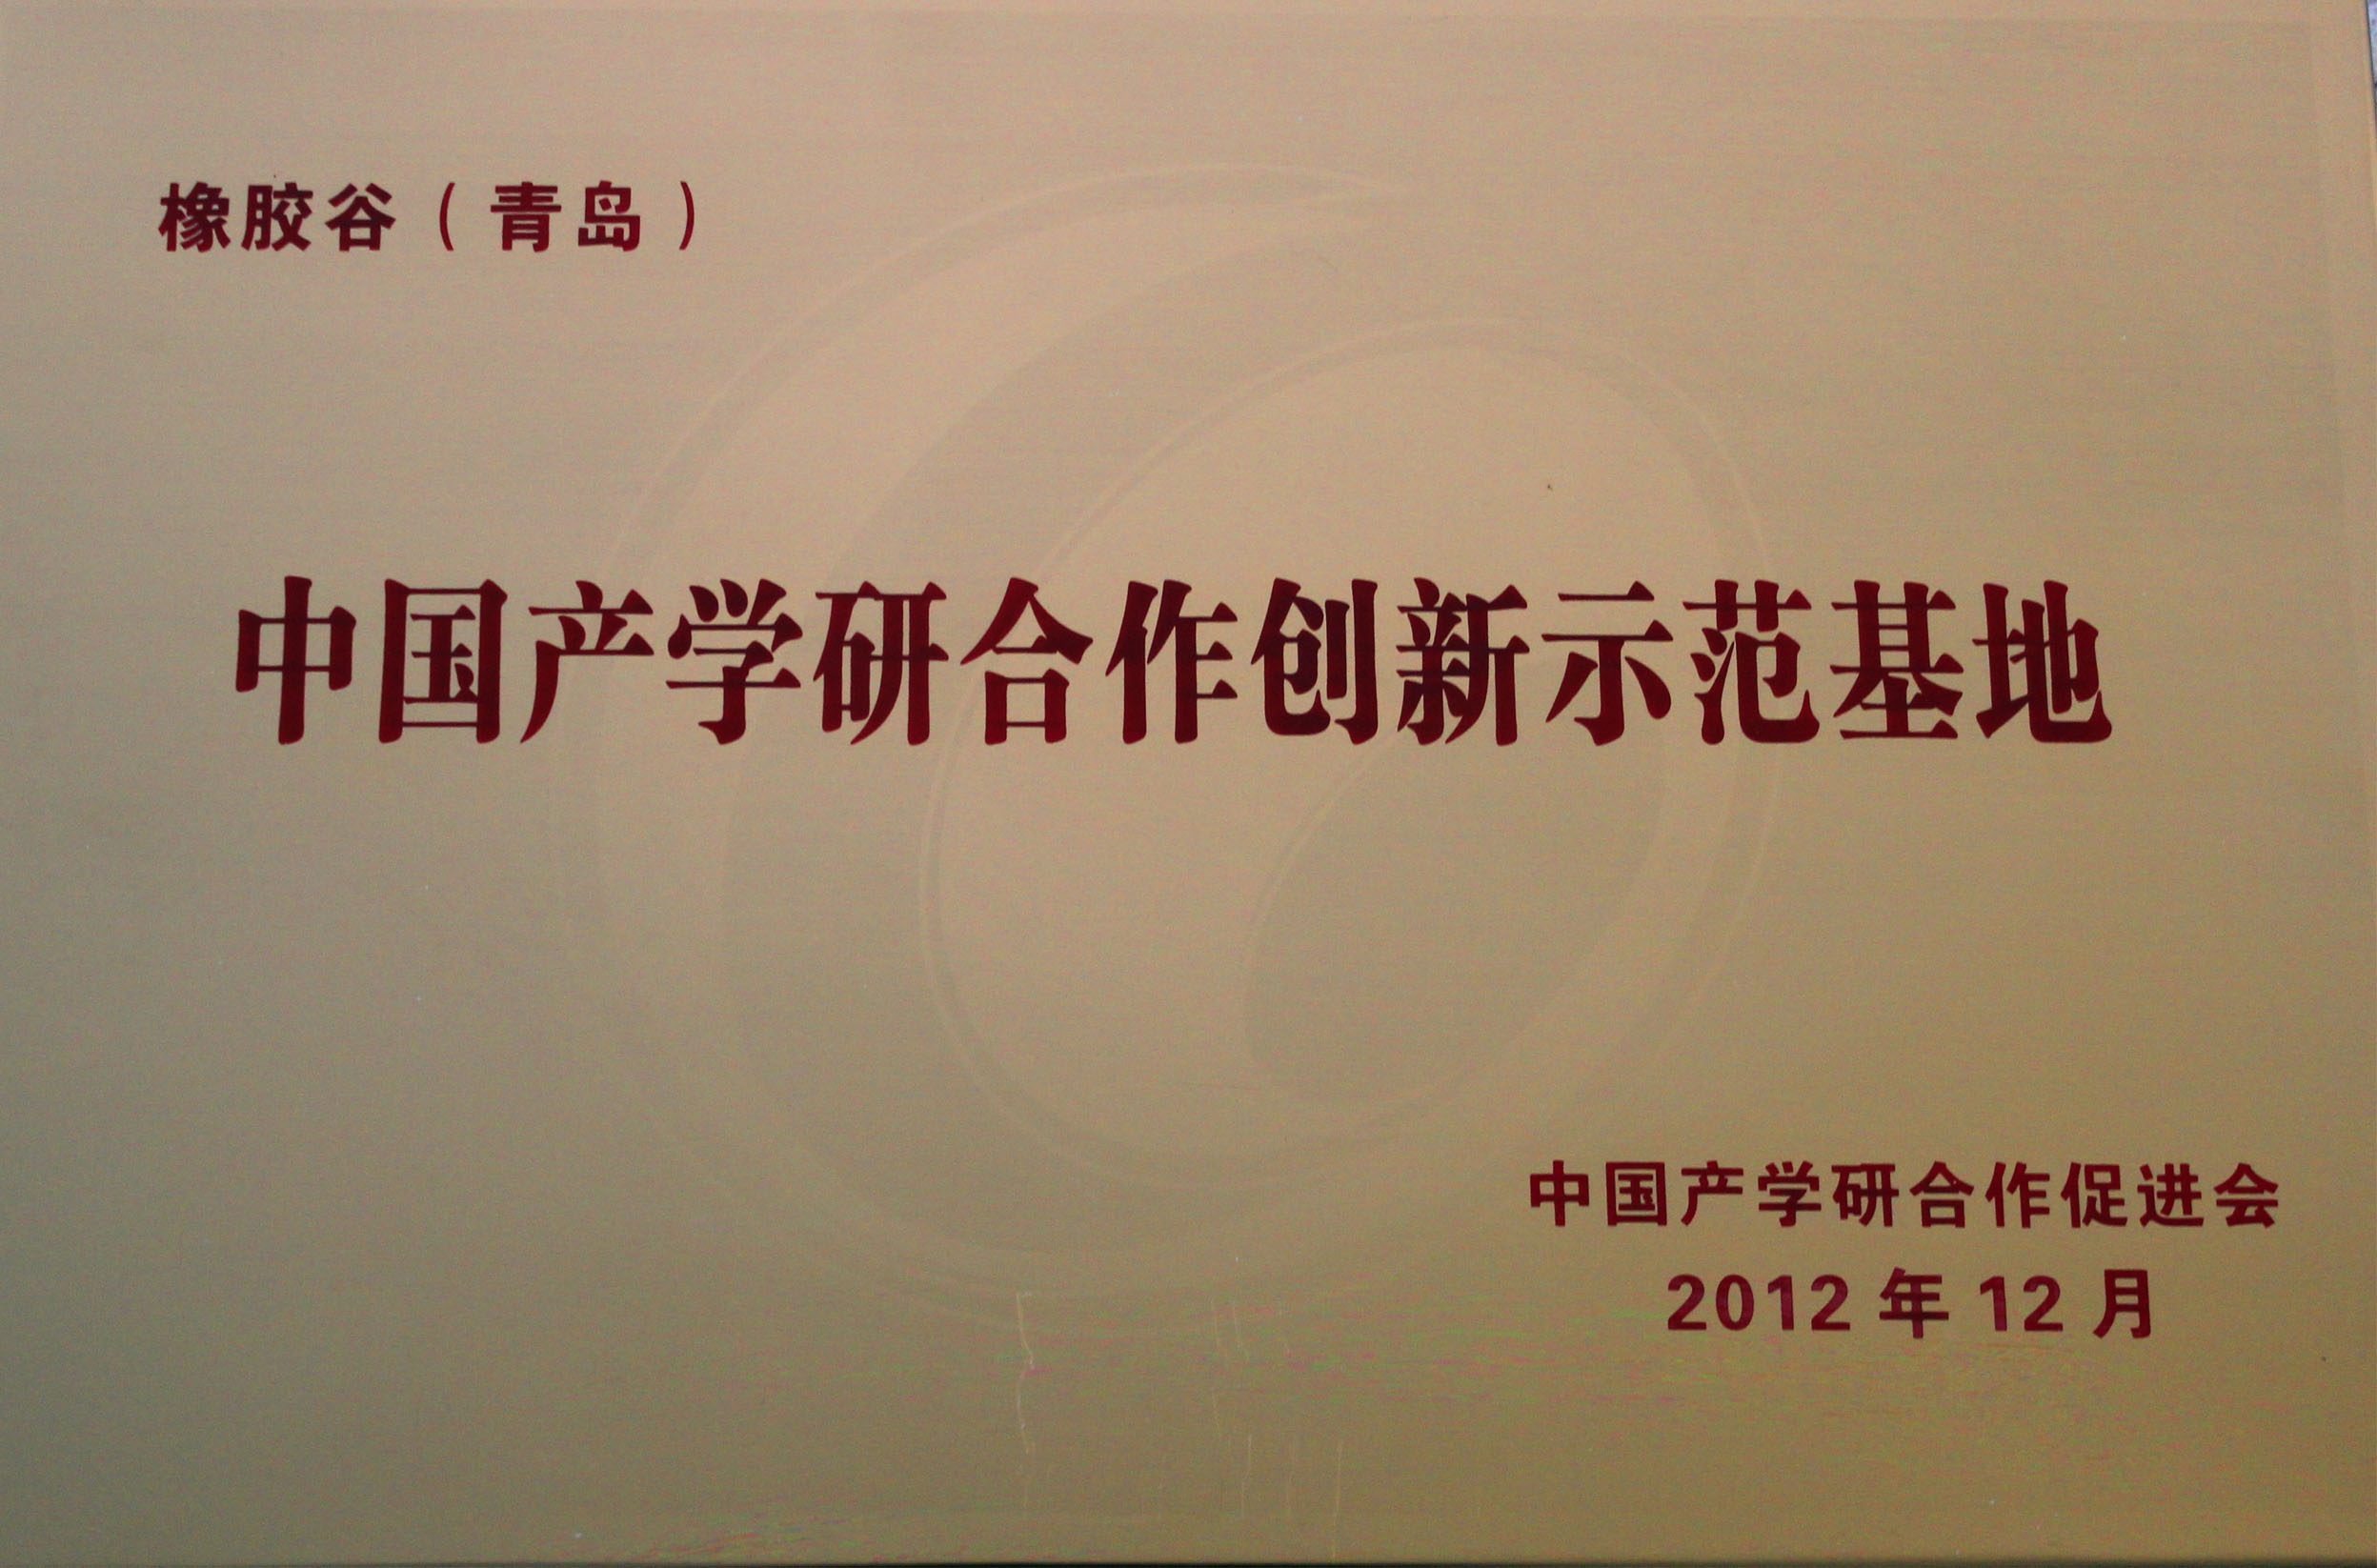 中国产学研合作创新示范基地-amjs澳金沙门（青岛）-中国产学研合作促进会